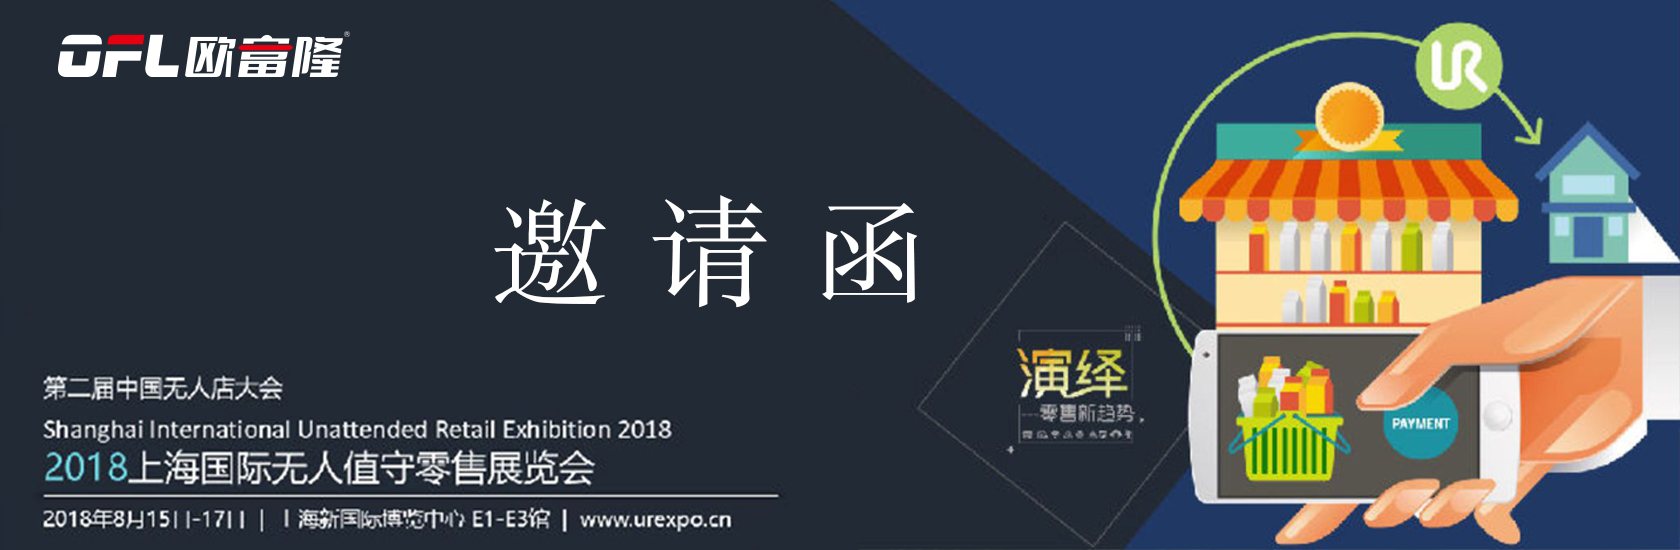 2018上海国际无人店&零售新终端服务创新展览会